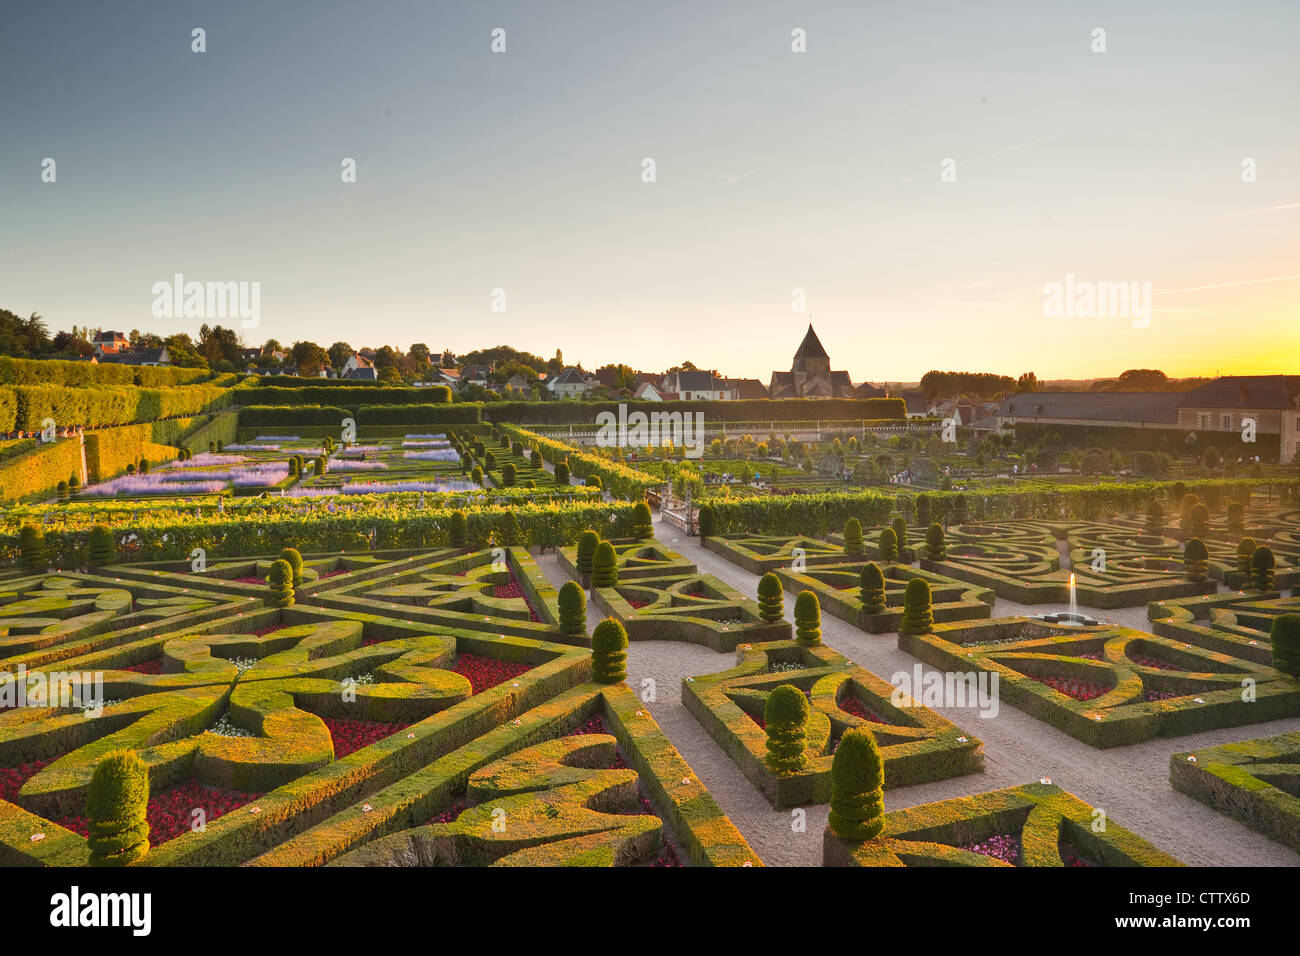 Los hermosos jardines del castillo de Villandry en el Valle del Loira de Francia. Foto de stock